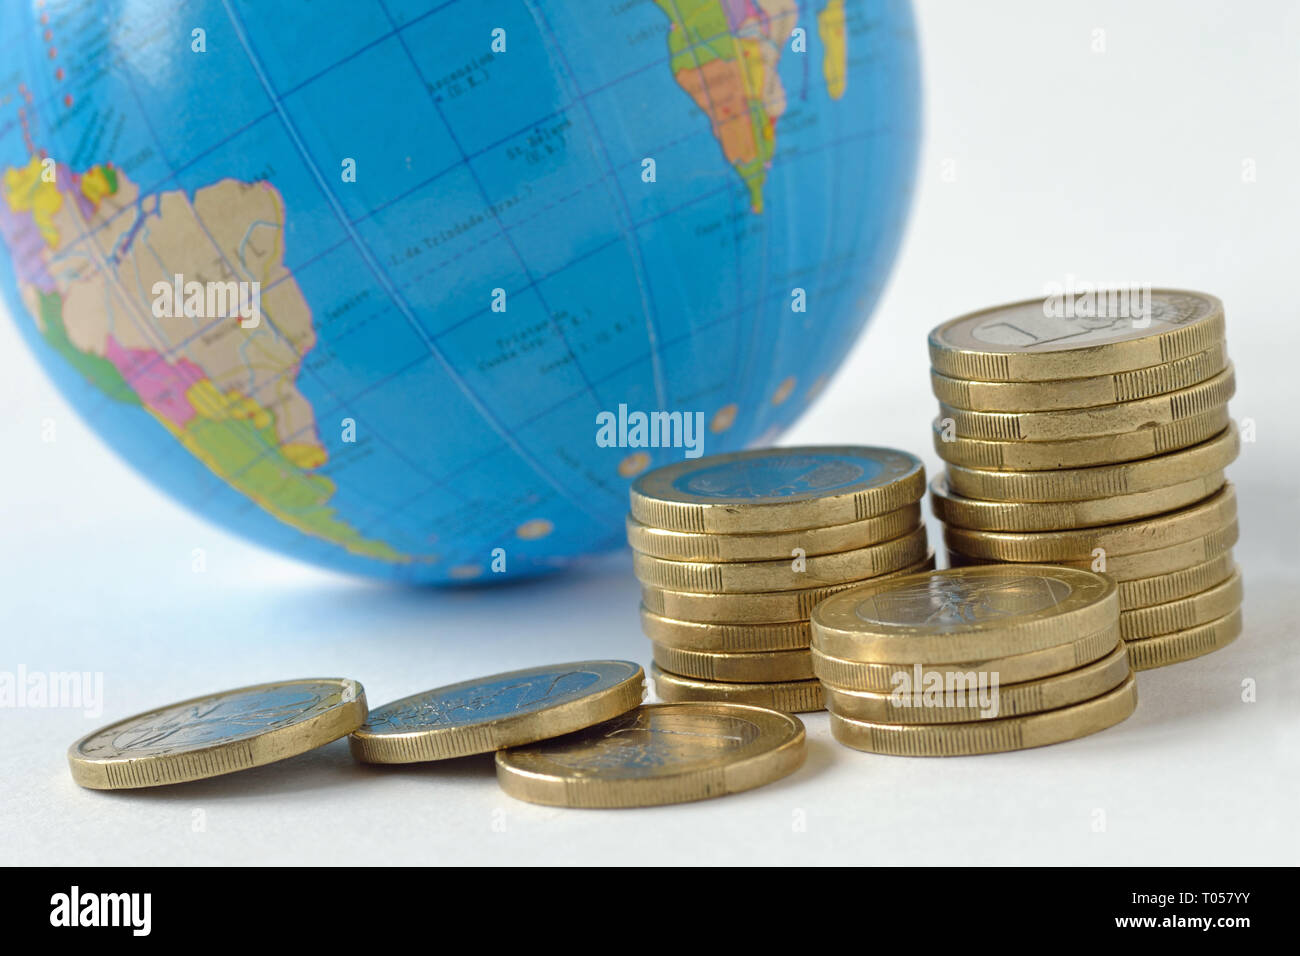 Pile de pièces de monnaie avec la planète sur l'arrière-plan - Concept de sauver la planète, le concept de relation entre l'argent, la croissance économique et de l'ee planète Banque D'Images